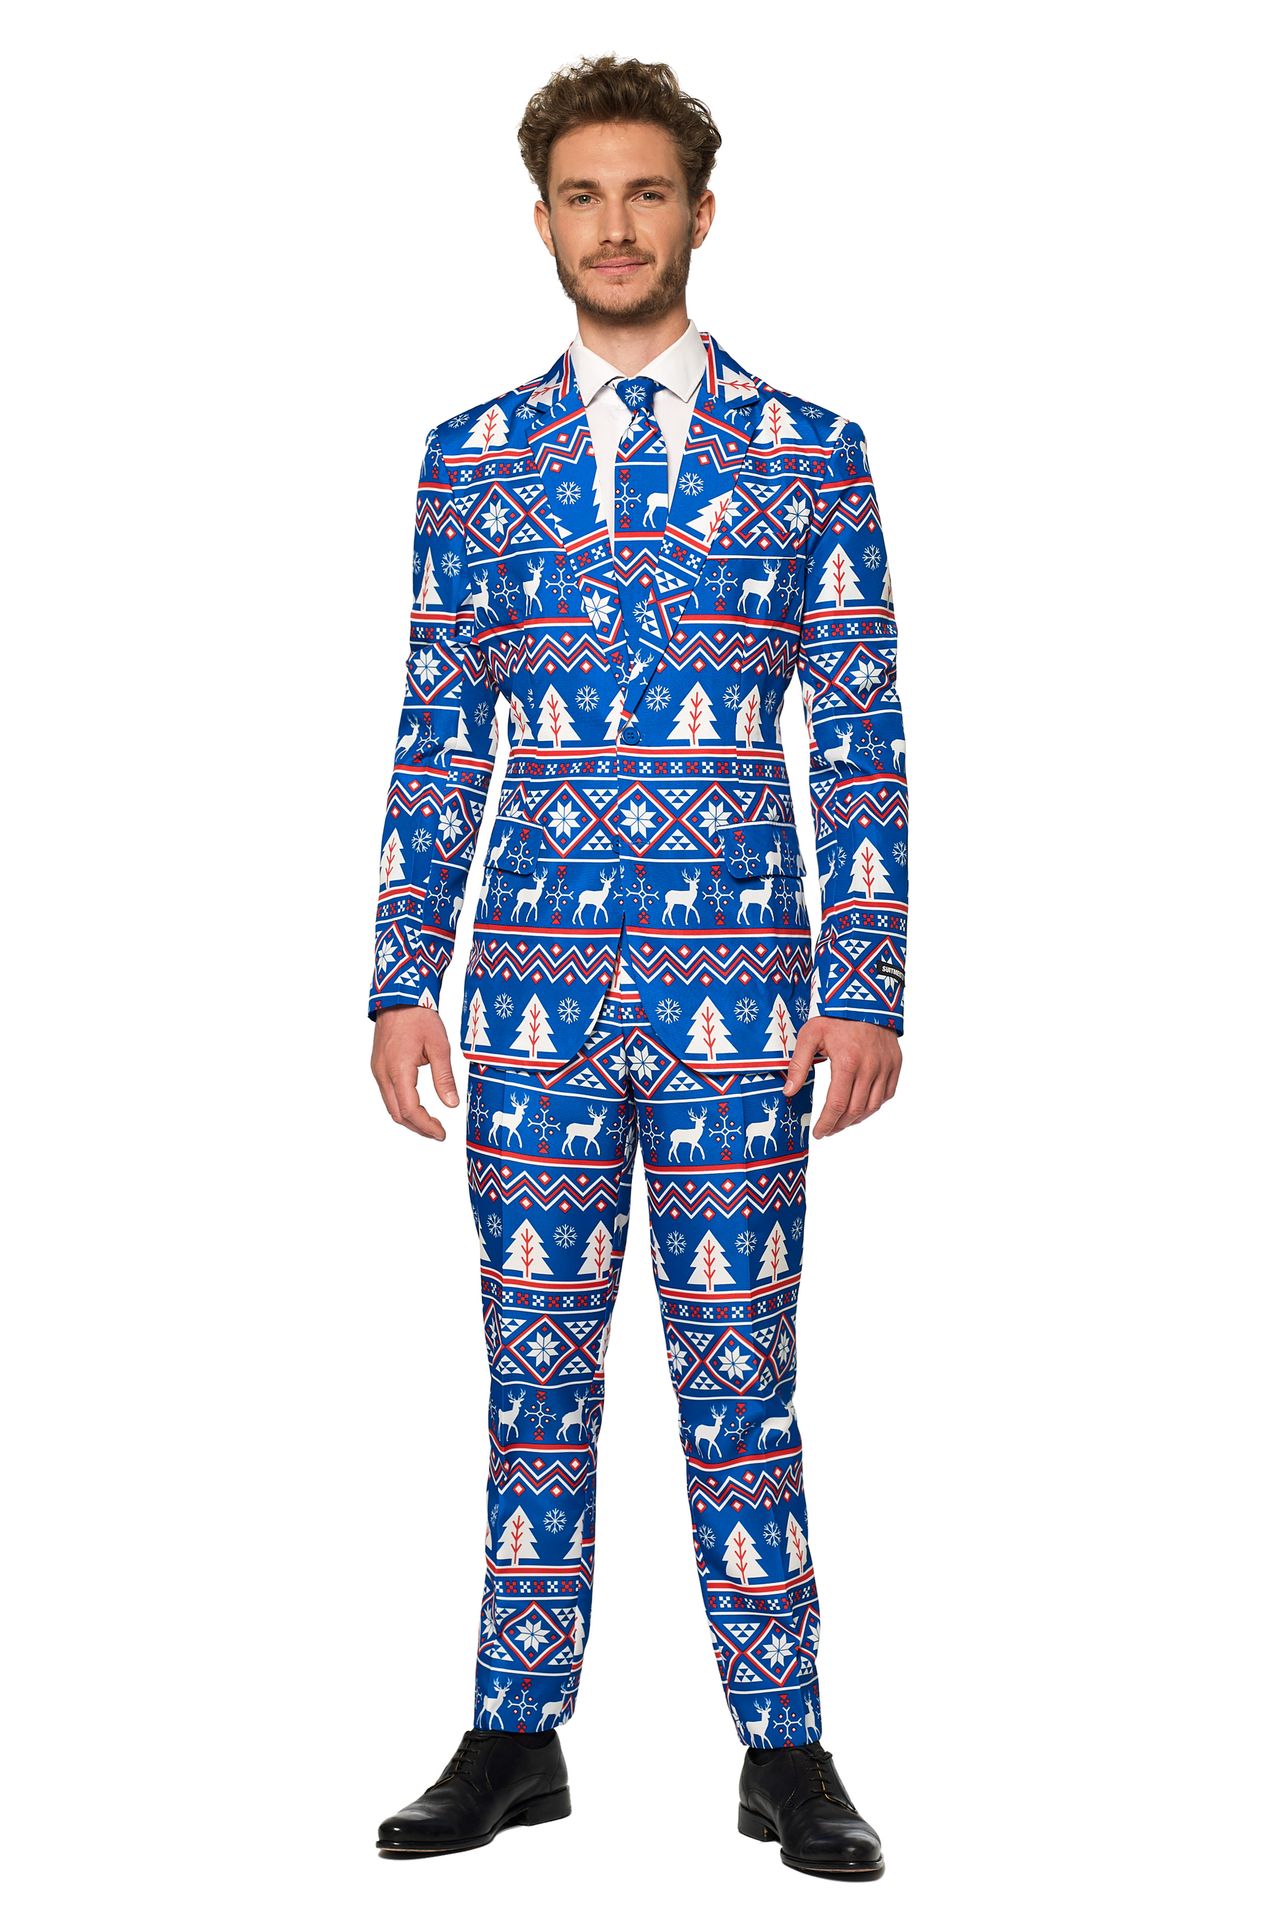 verkoper Zaklampen wijsheid Blauwe kerstmis Suitmeister kostuum